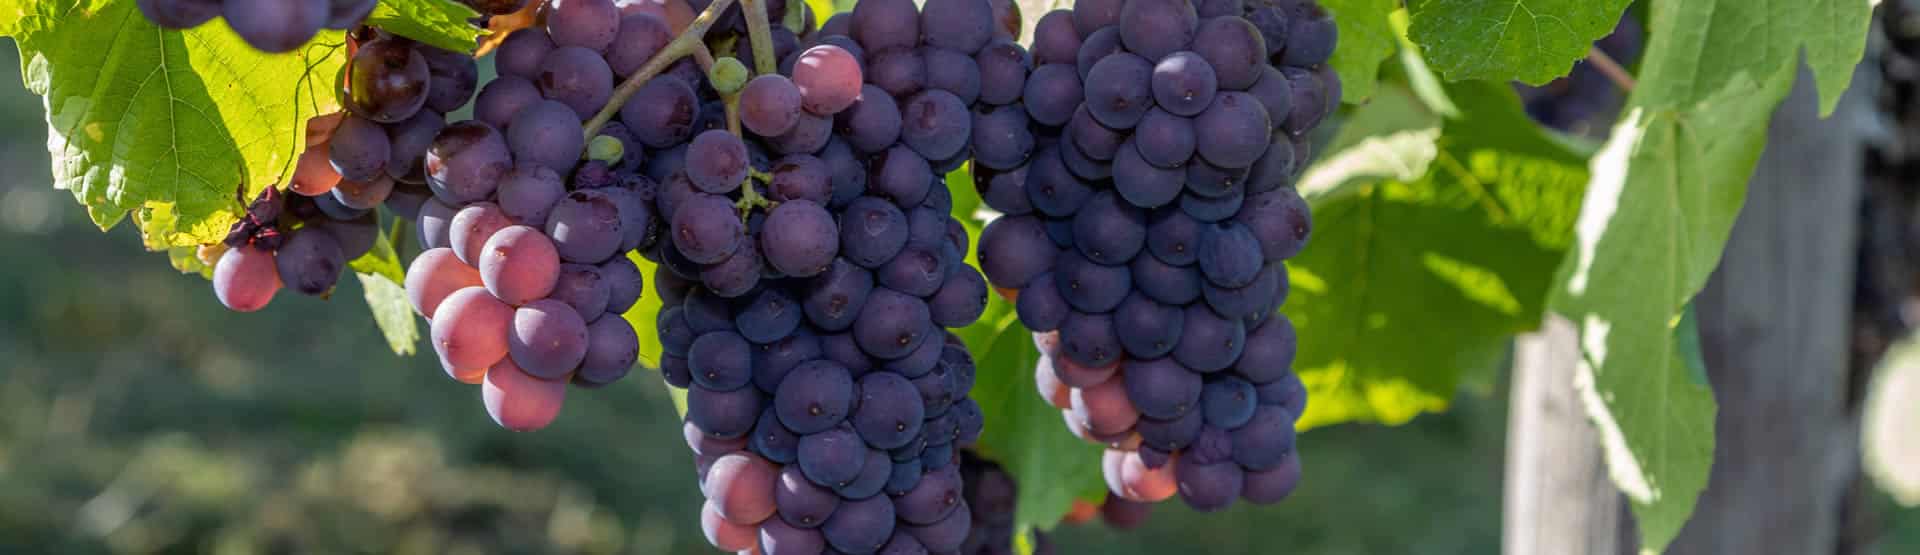 Weinregion Mosel - blaue Weintrauben